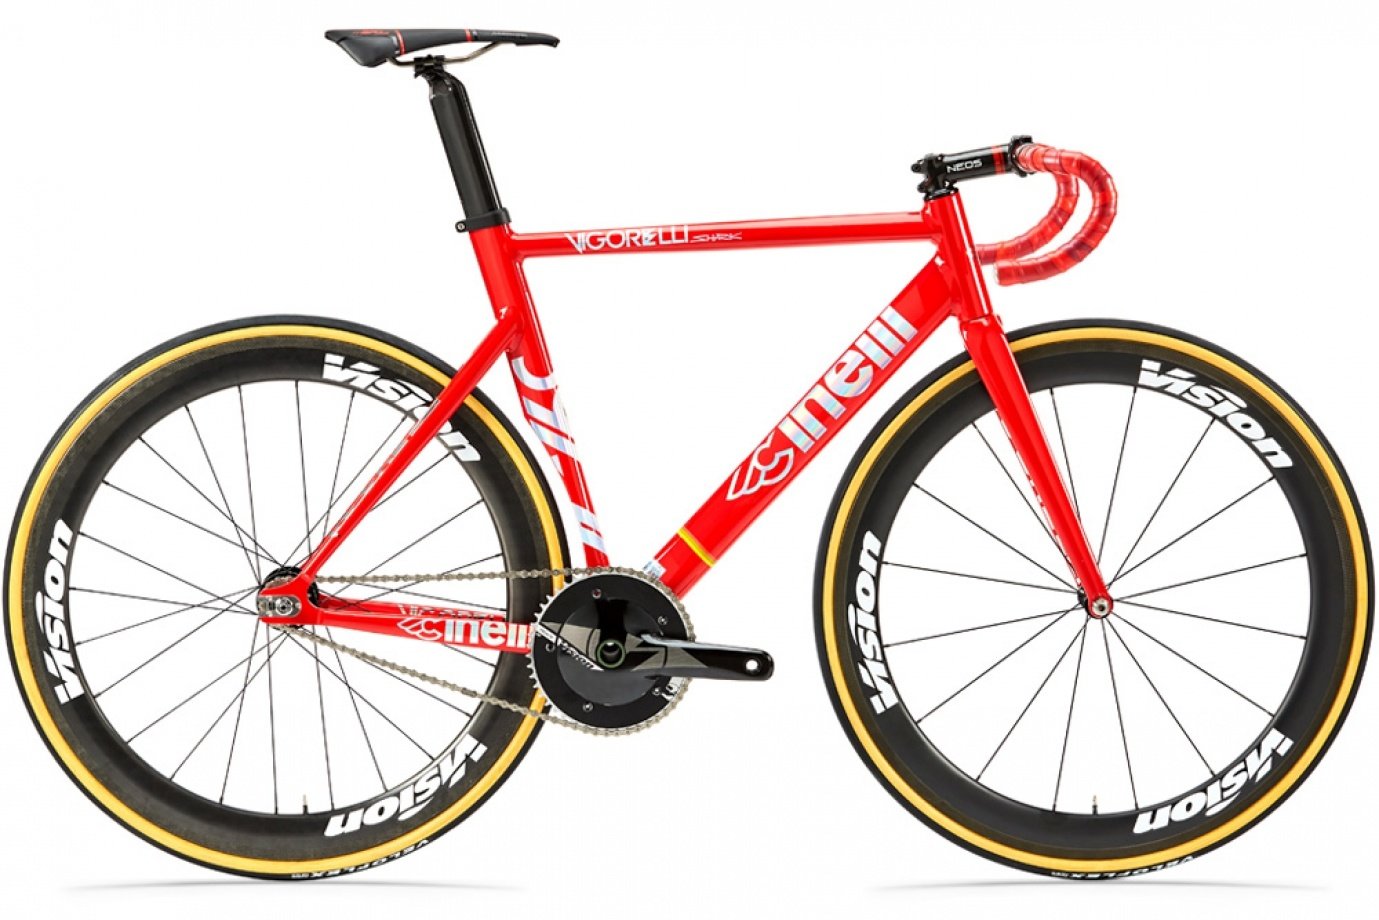 Červený športový aerodynamický singlespeed bicykel značky Cinelli s jedinou rýchlosťou, športovým sedlom a zahnutými športovými riadidlami.